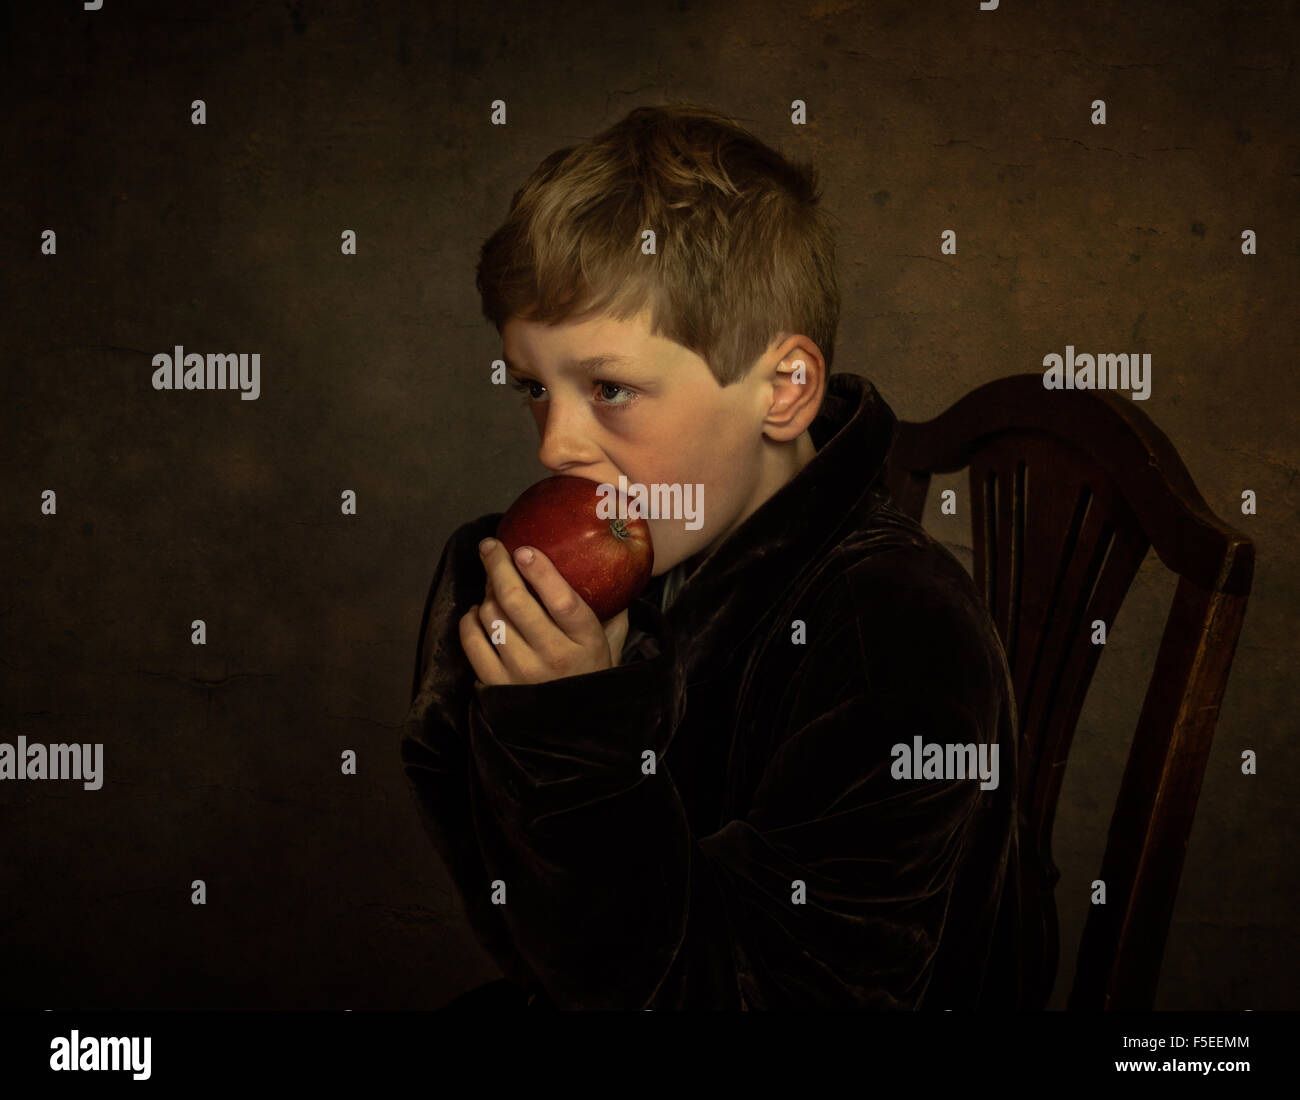 Bella arte ritratto di un ragazzo seduto su una sedia mangiare una mela Foto Stock